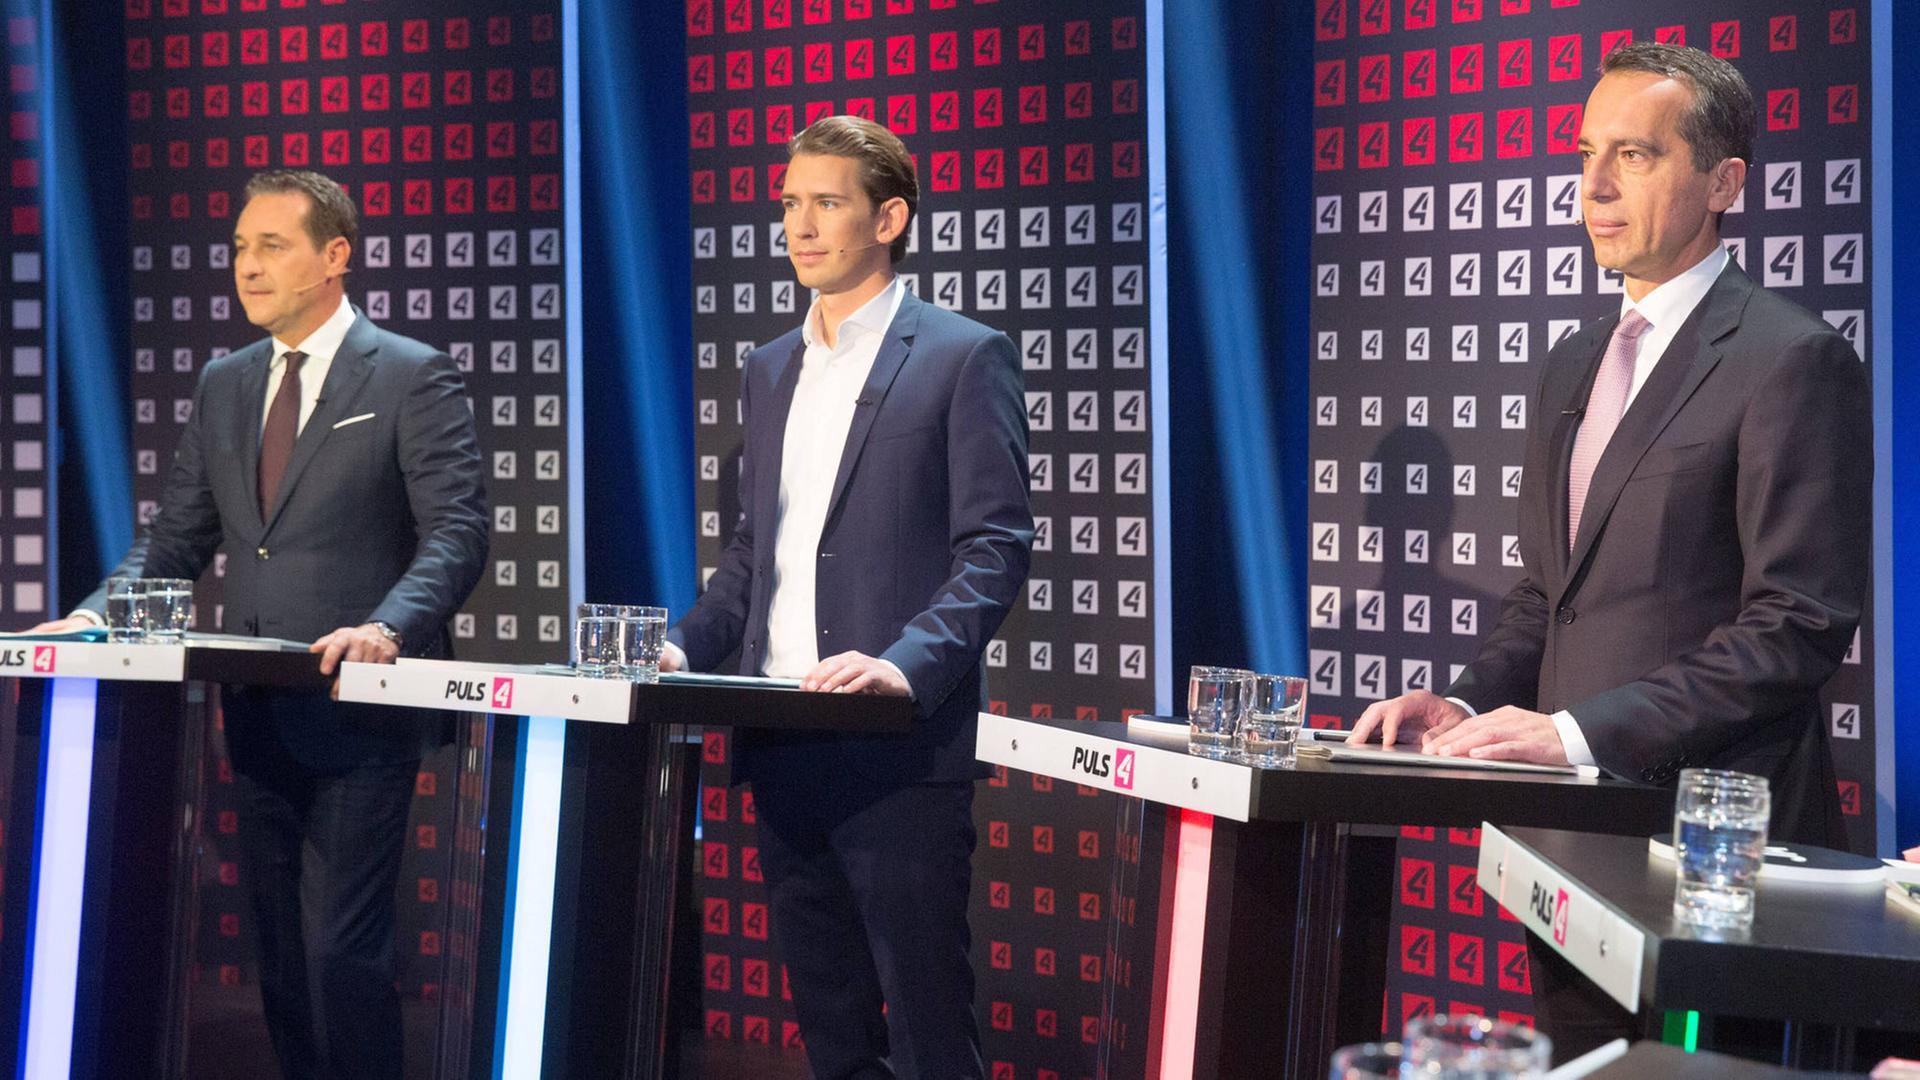 Die Spitzenkandidaten für den österreichischen Nationalrat, Heinz Christian Strache (FPÖ), Außenminister Sebastian Kurz (ÖVP), Bundeskanzler Christian Kern (SPÖ) (v.l.)